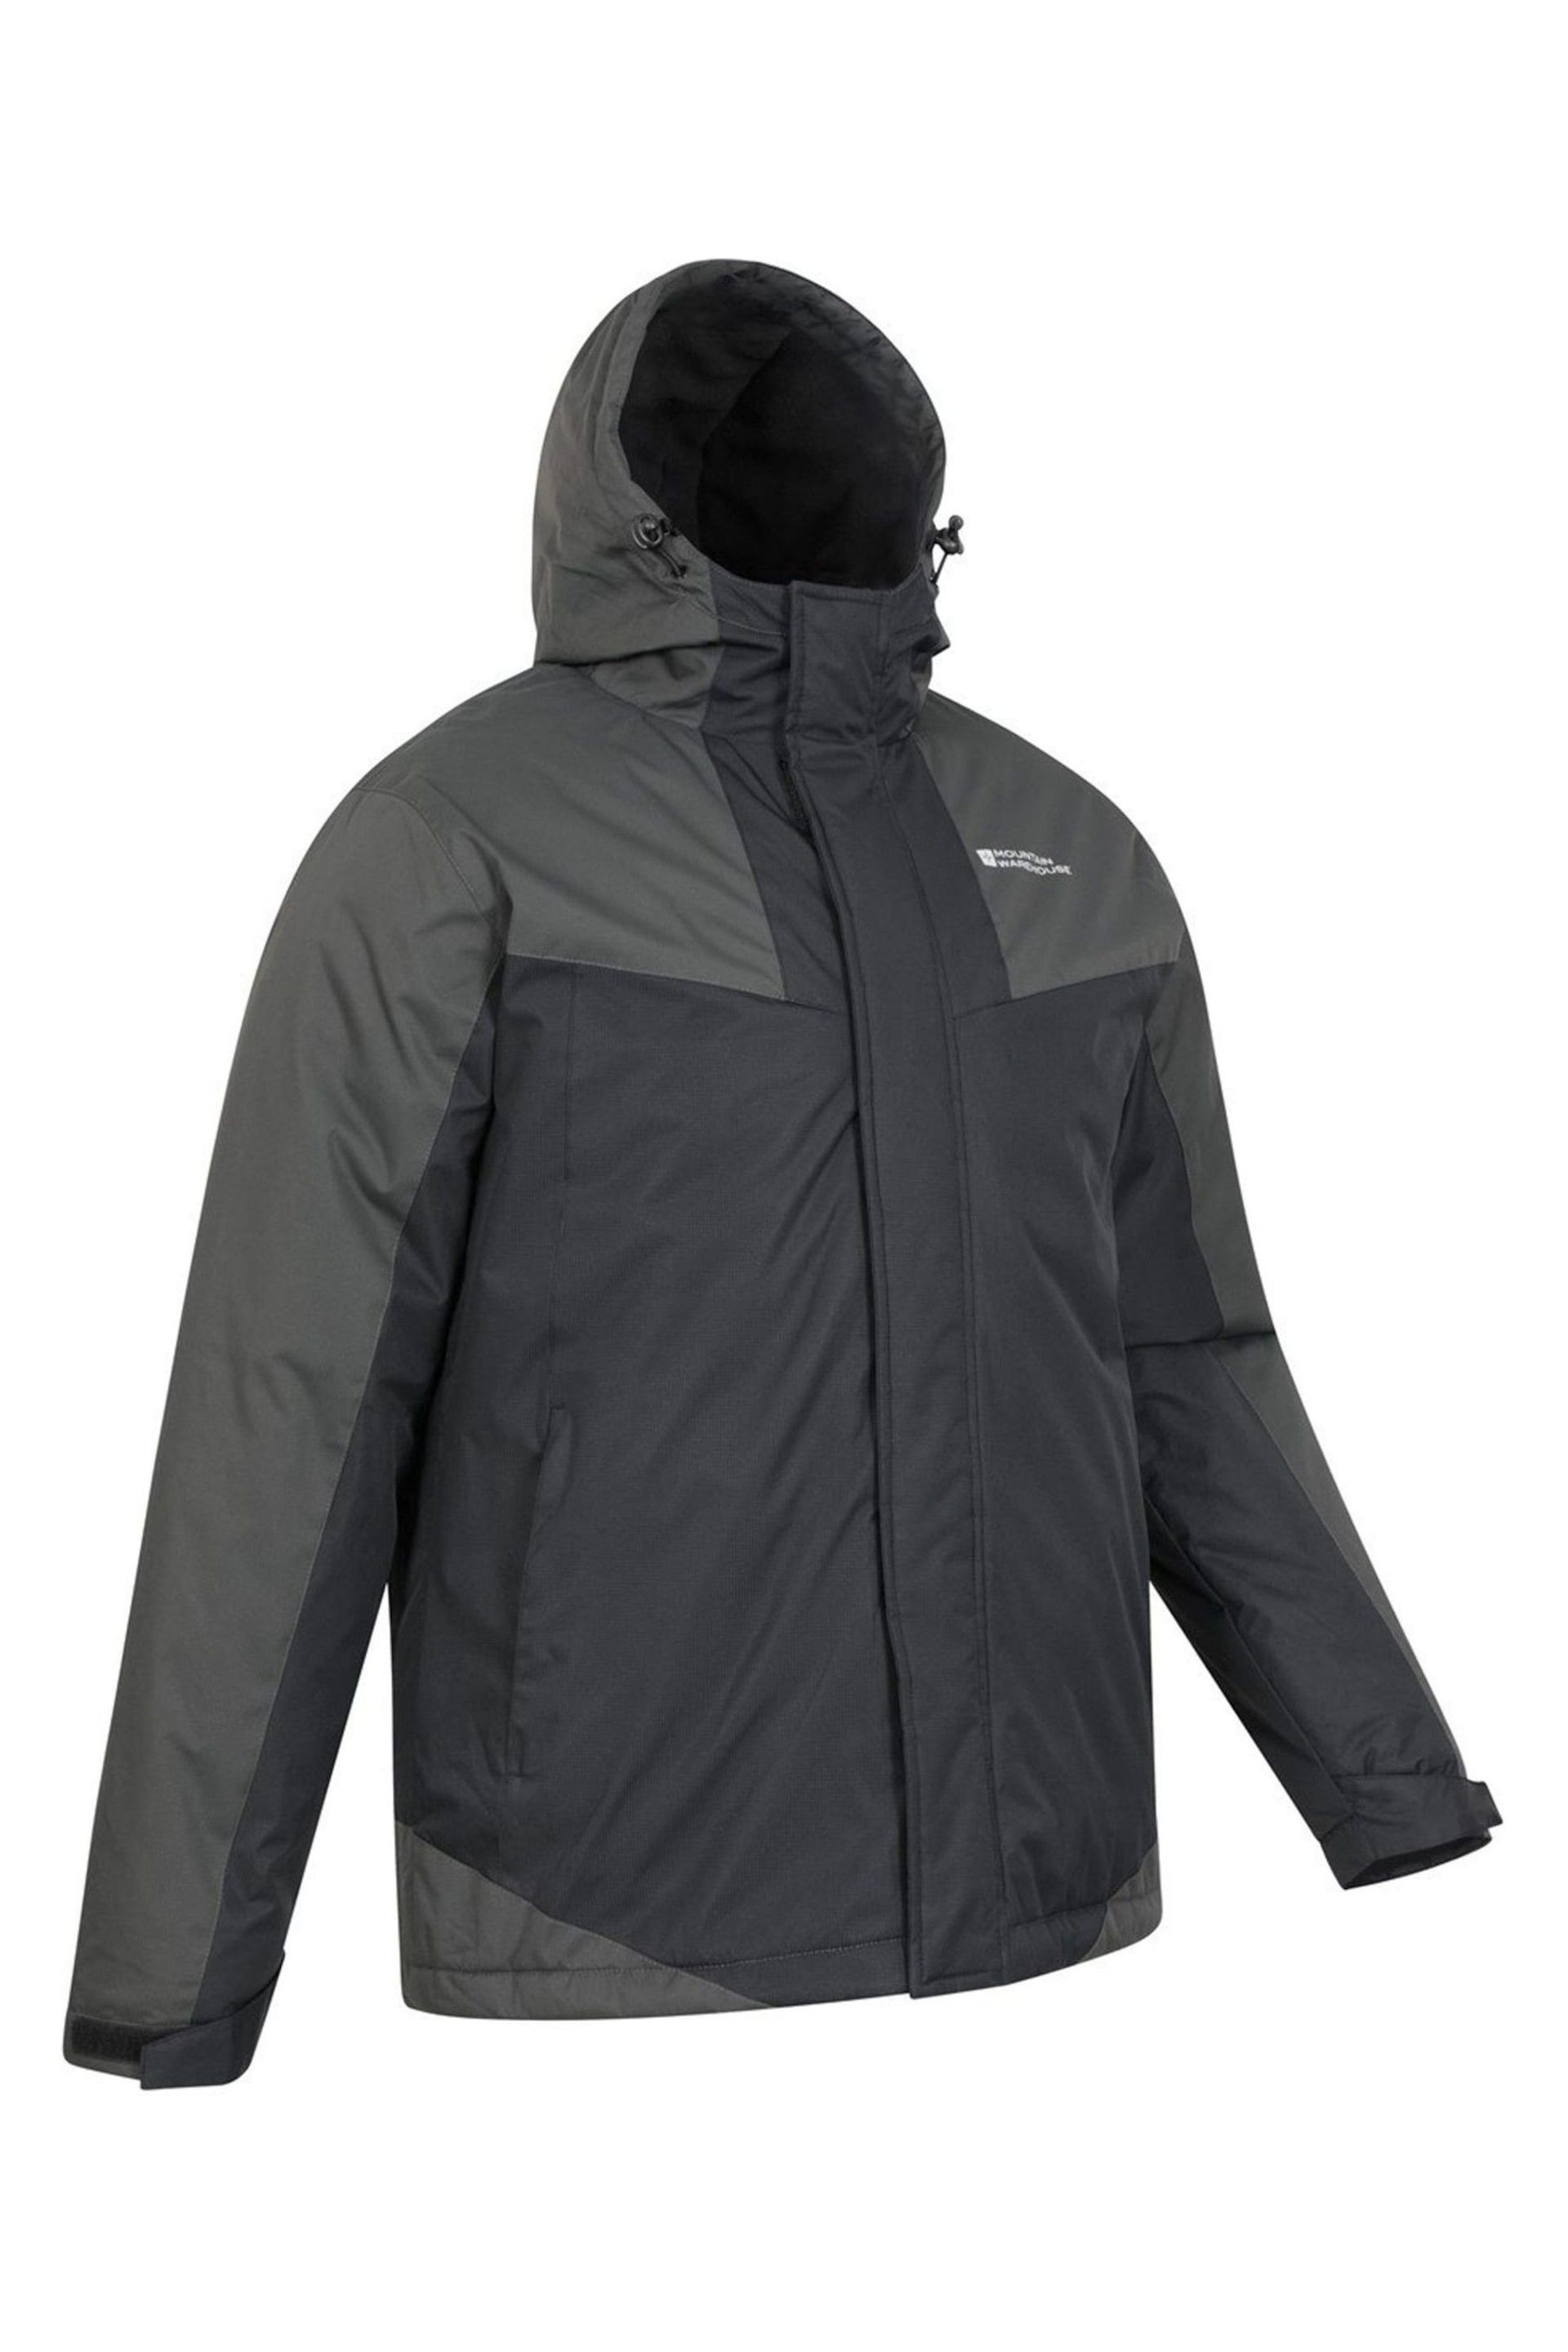 Mountain Warehouse Black Dusk Ski Jacket - Image 2 of 3